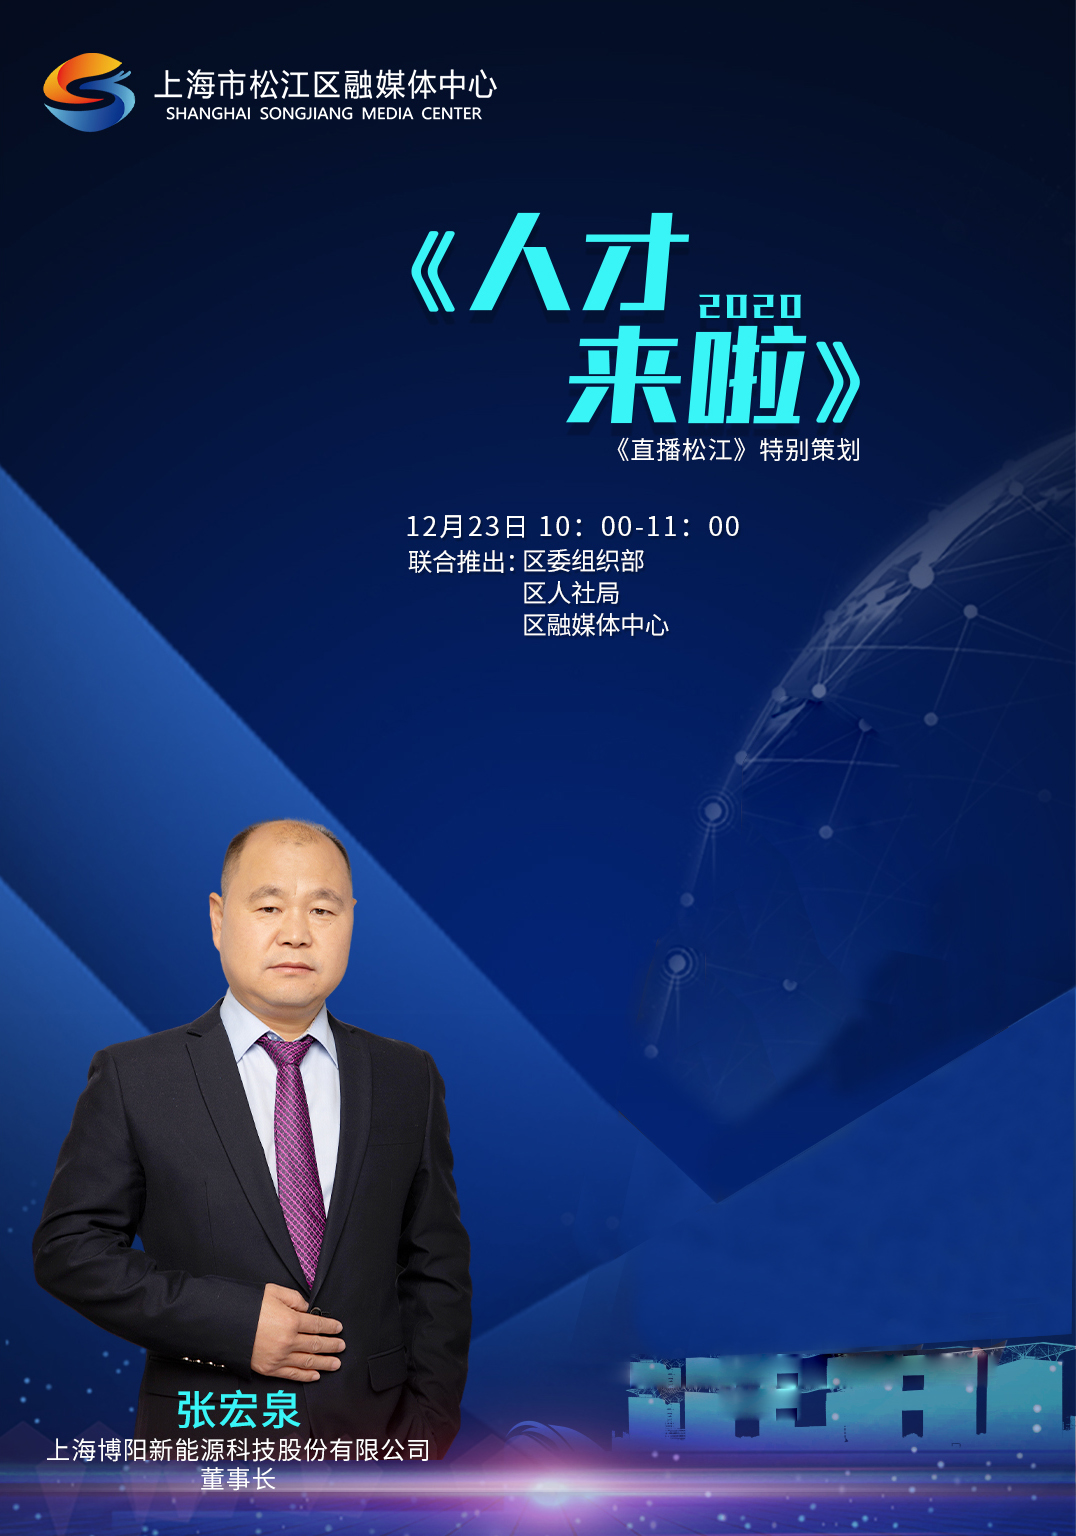 董事长张宏泉参加区融媒体中心《人才来啦》节目访谈